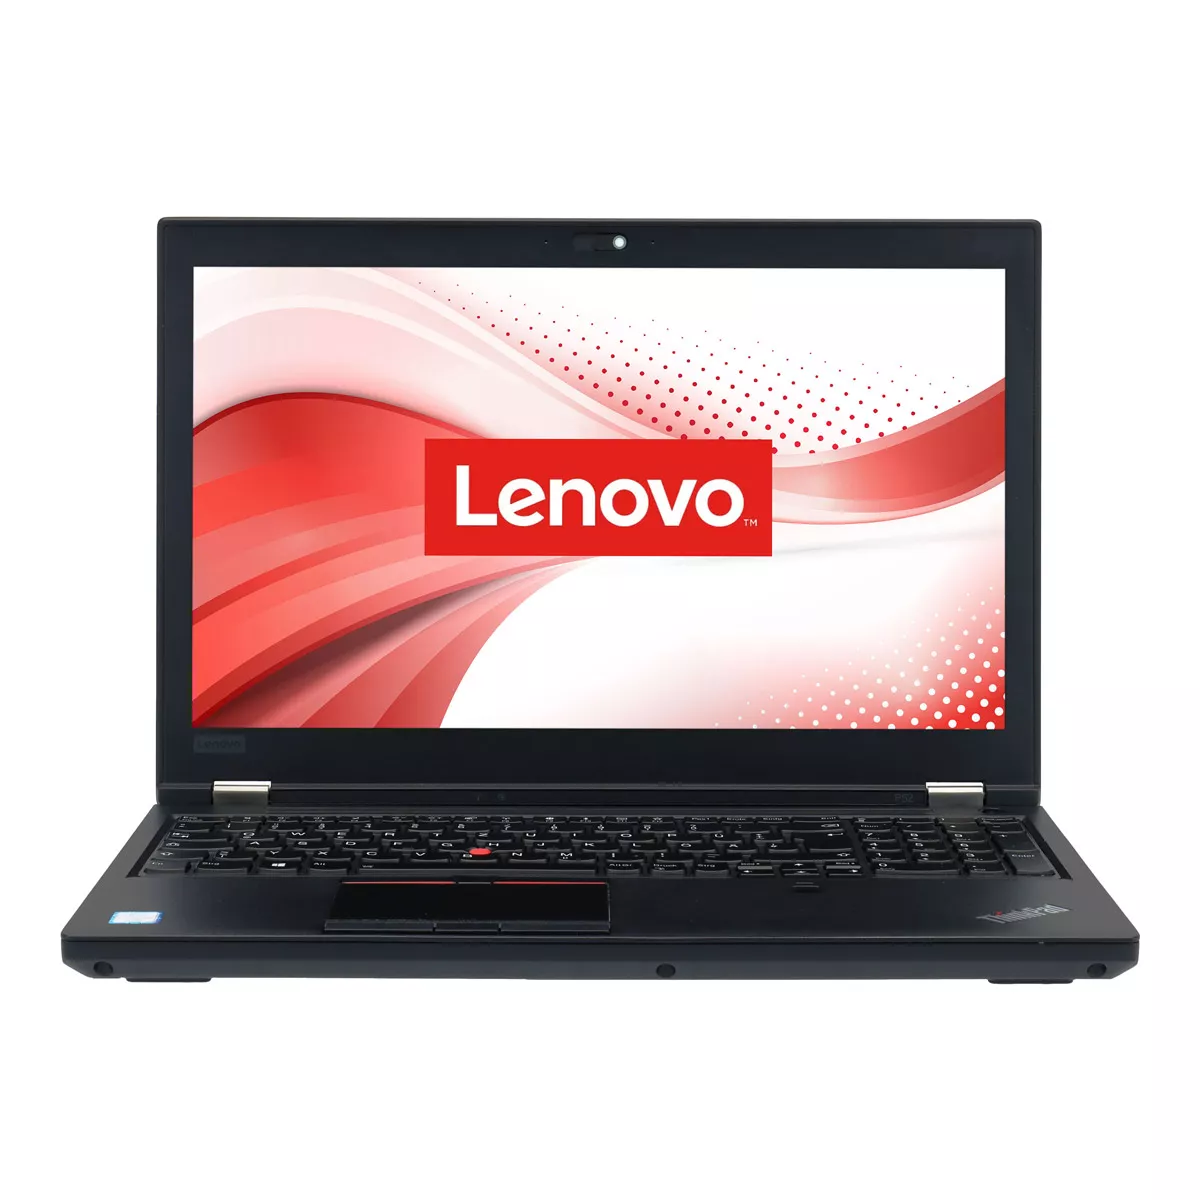 Lenovo ThinkPad P52 Core i9 8950HK nVidia Quadro P3200M 32 GB 500 GB M.2 nVME SSD Webcam B